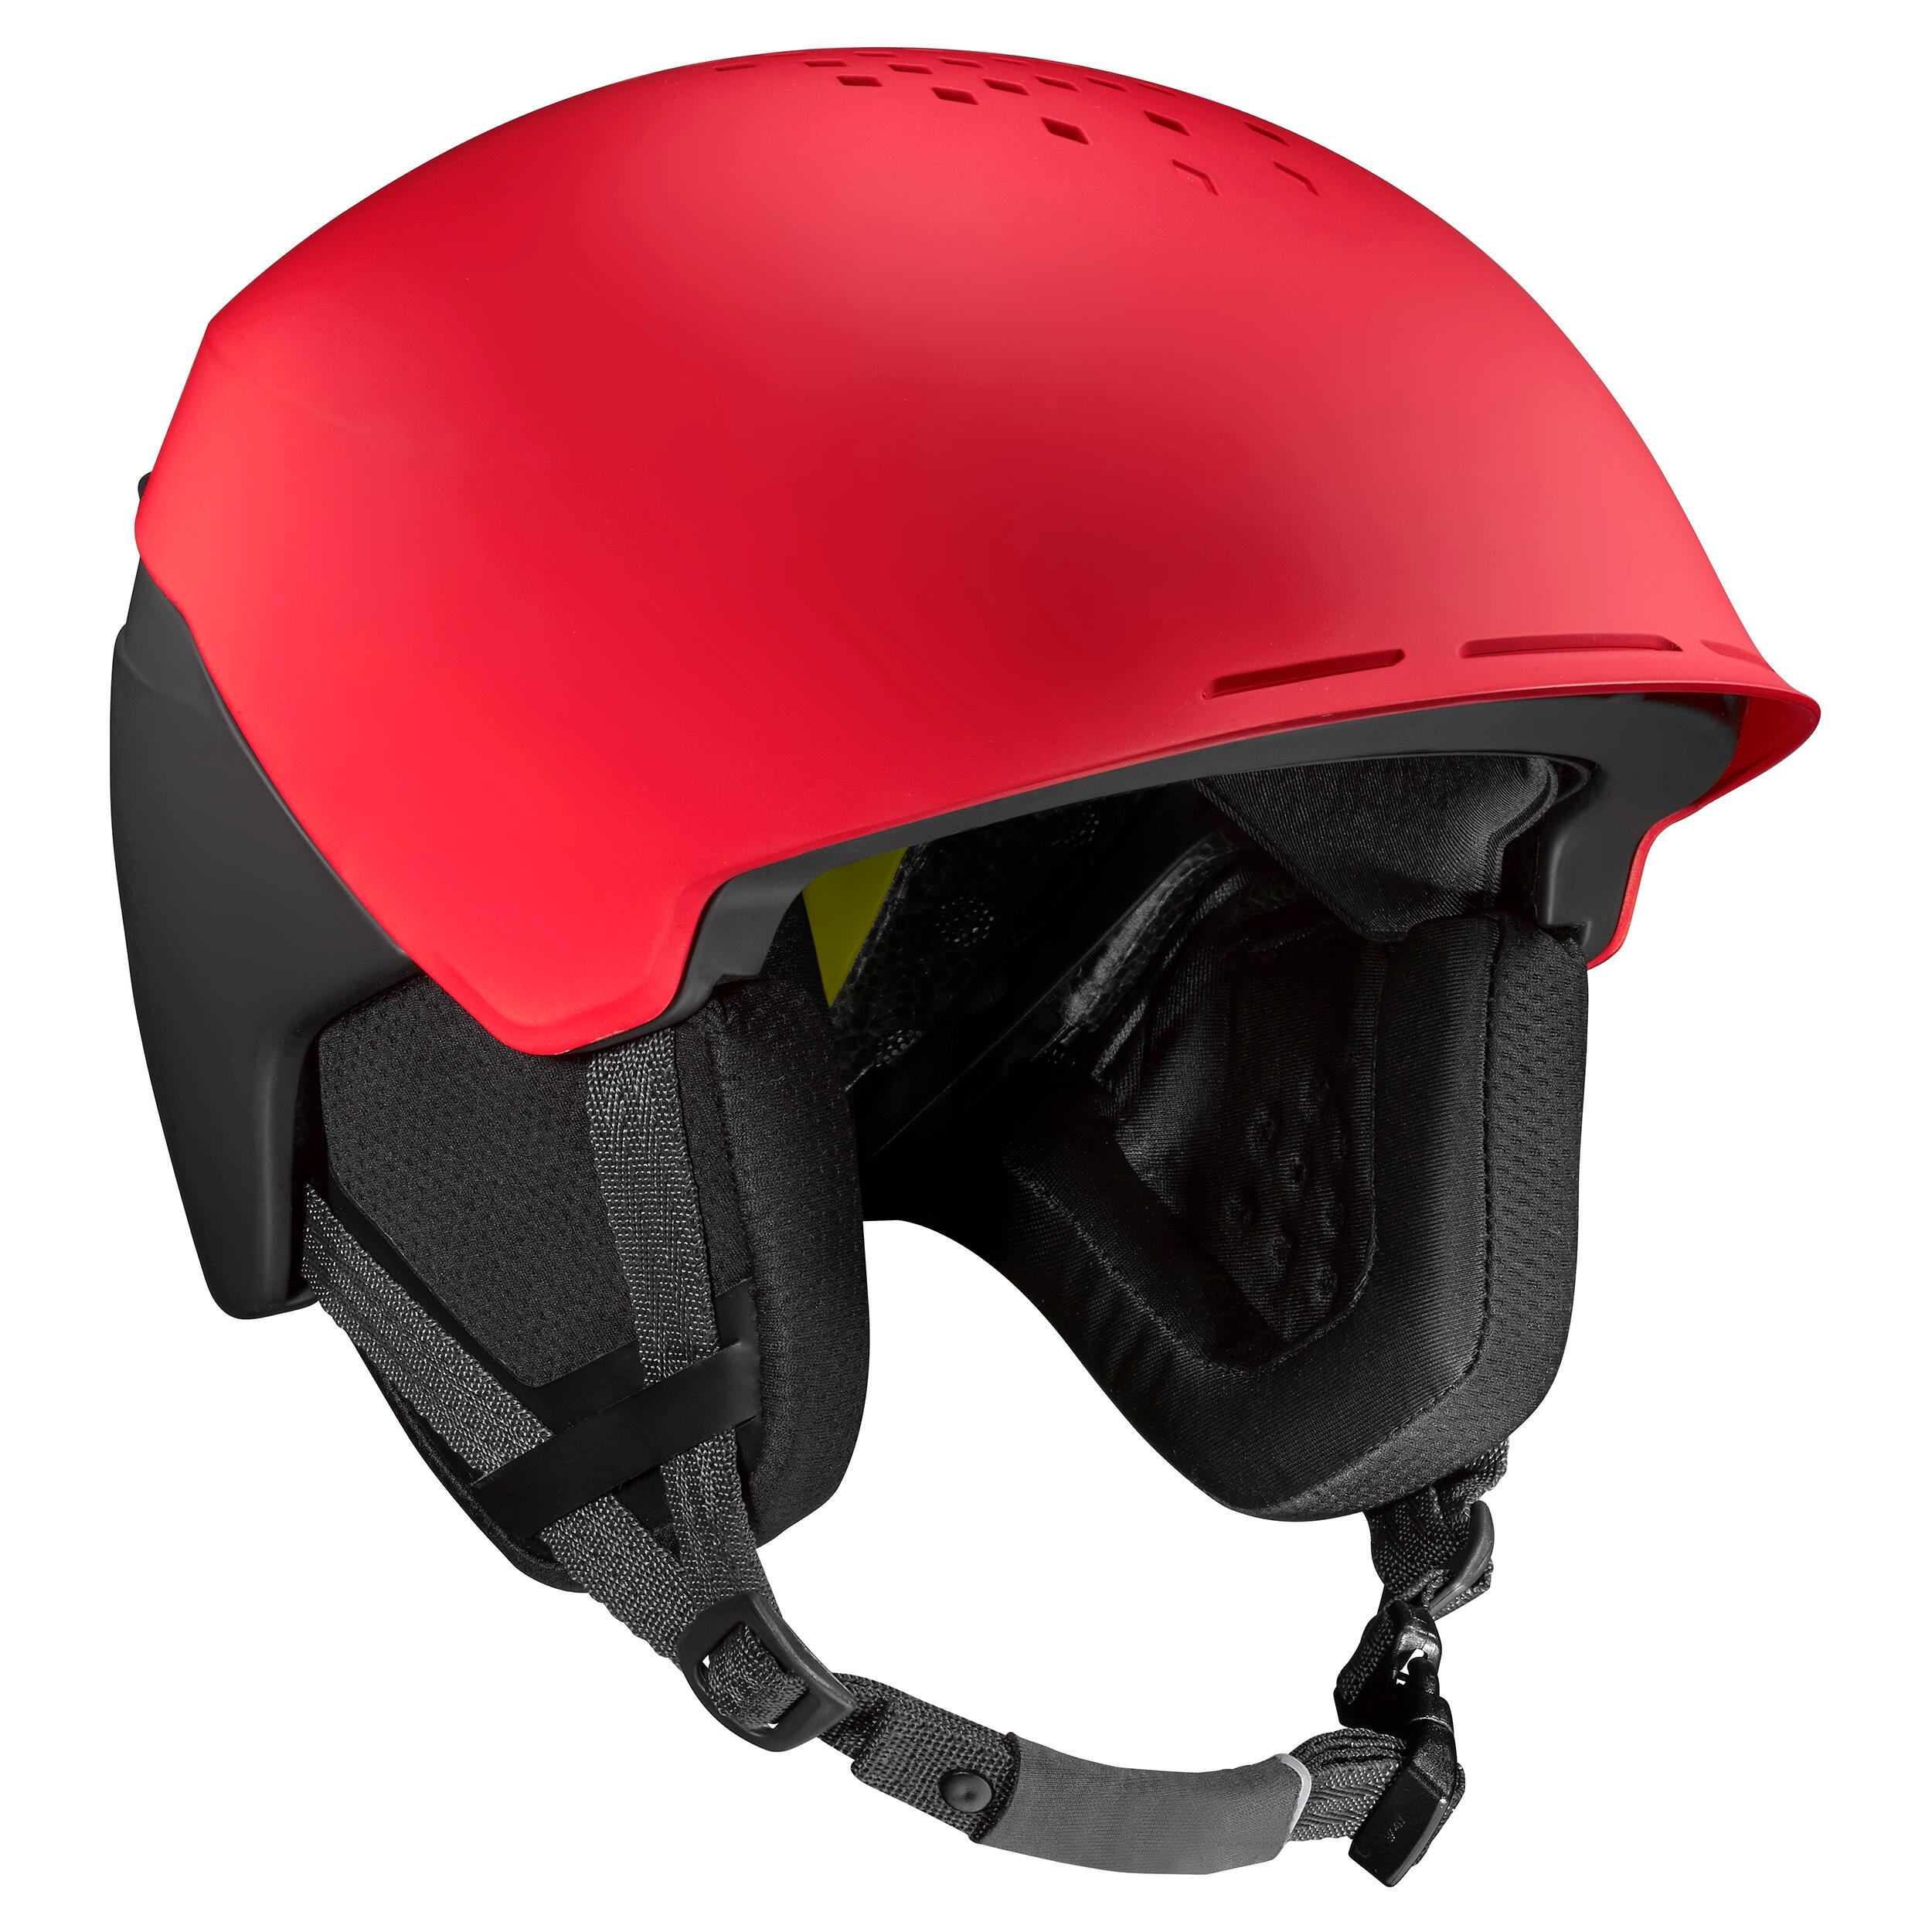 Adult Freeride Ski Helmet FR 900 MIPS - Red/Black 1/12